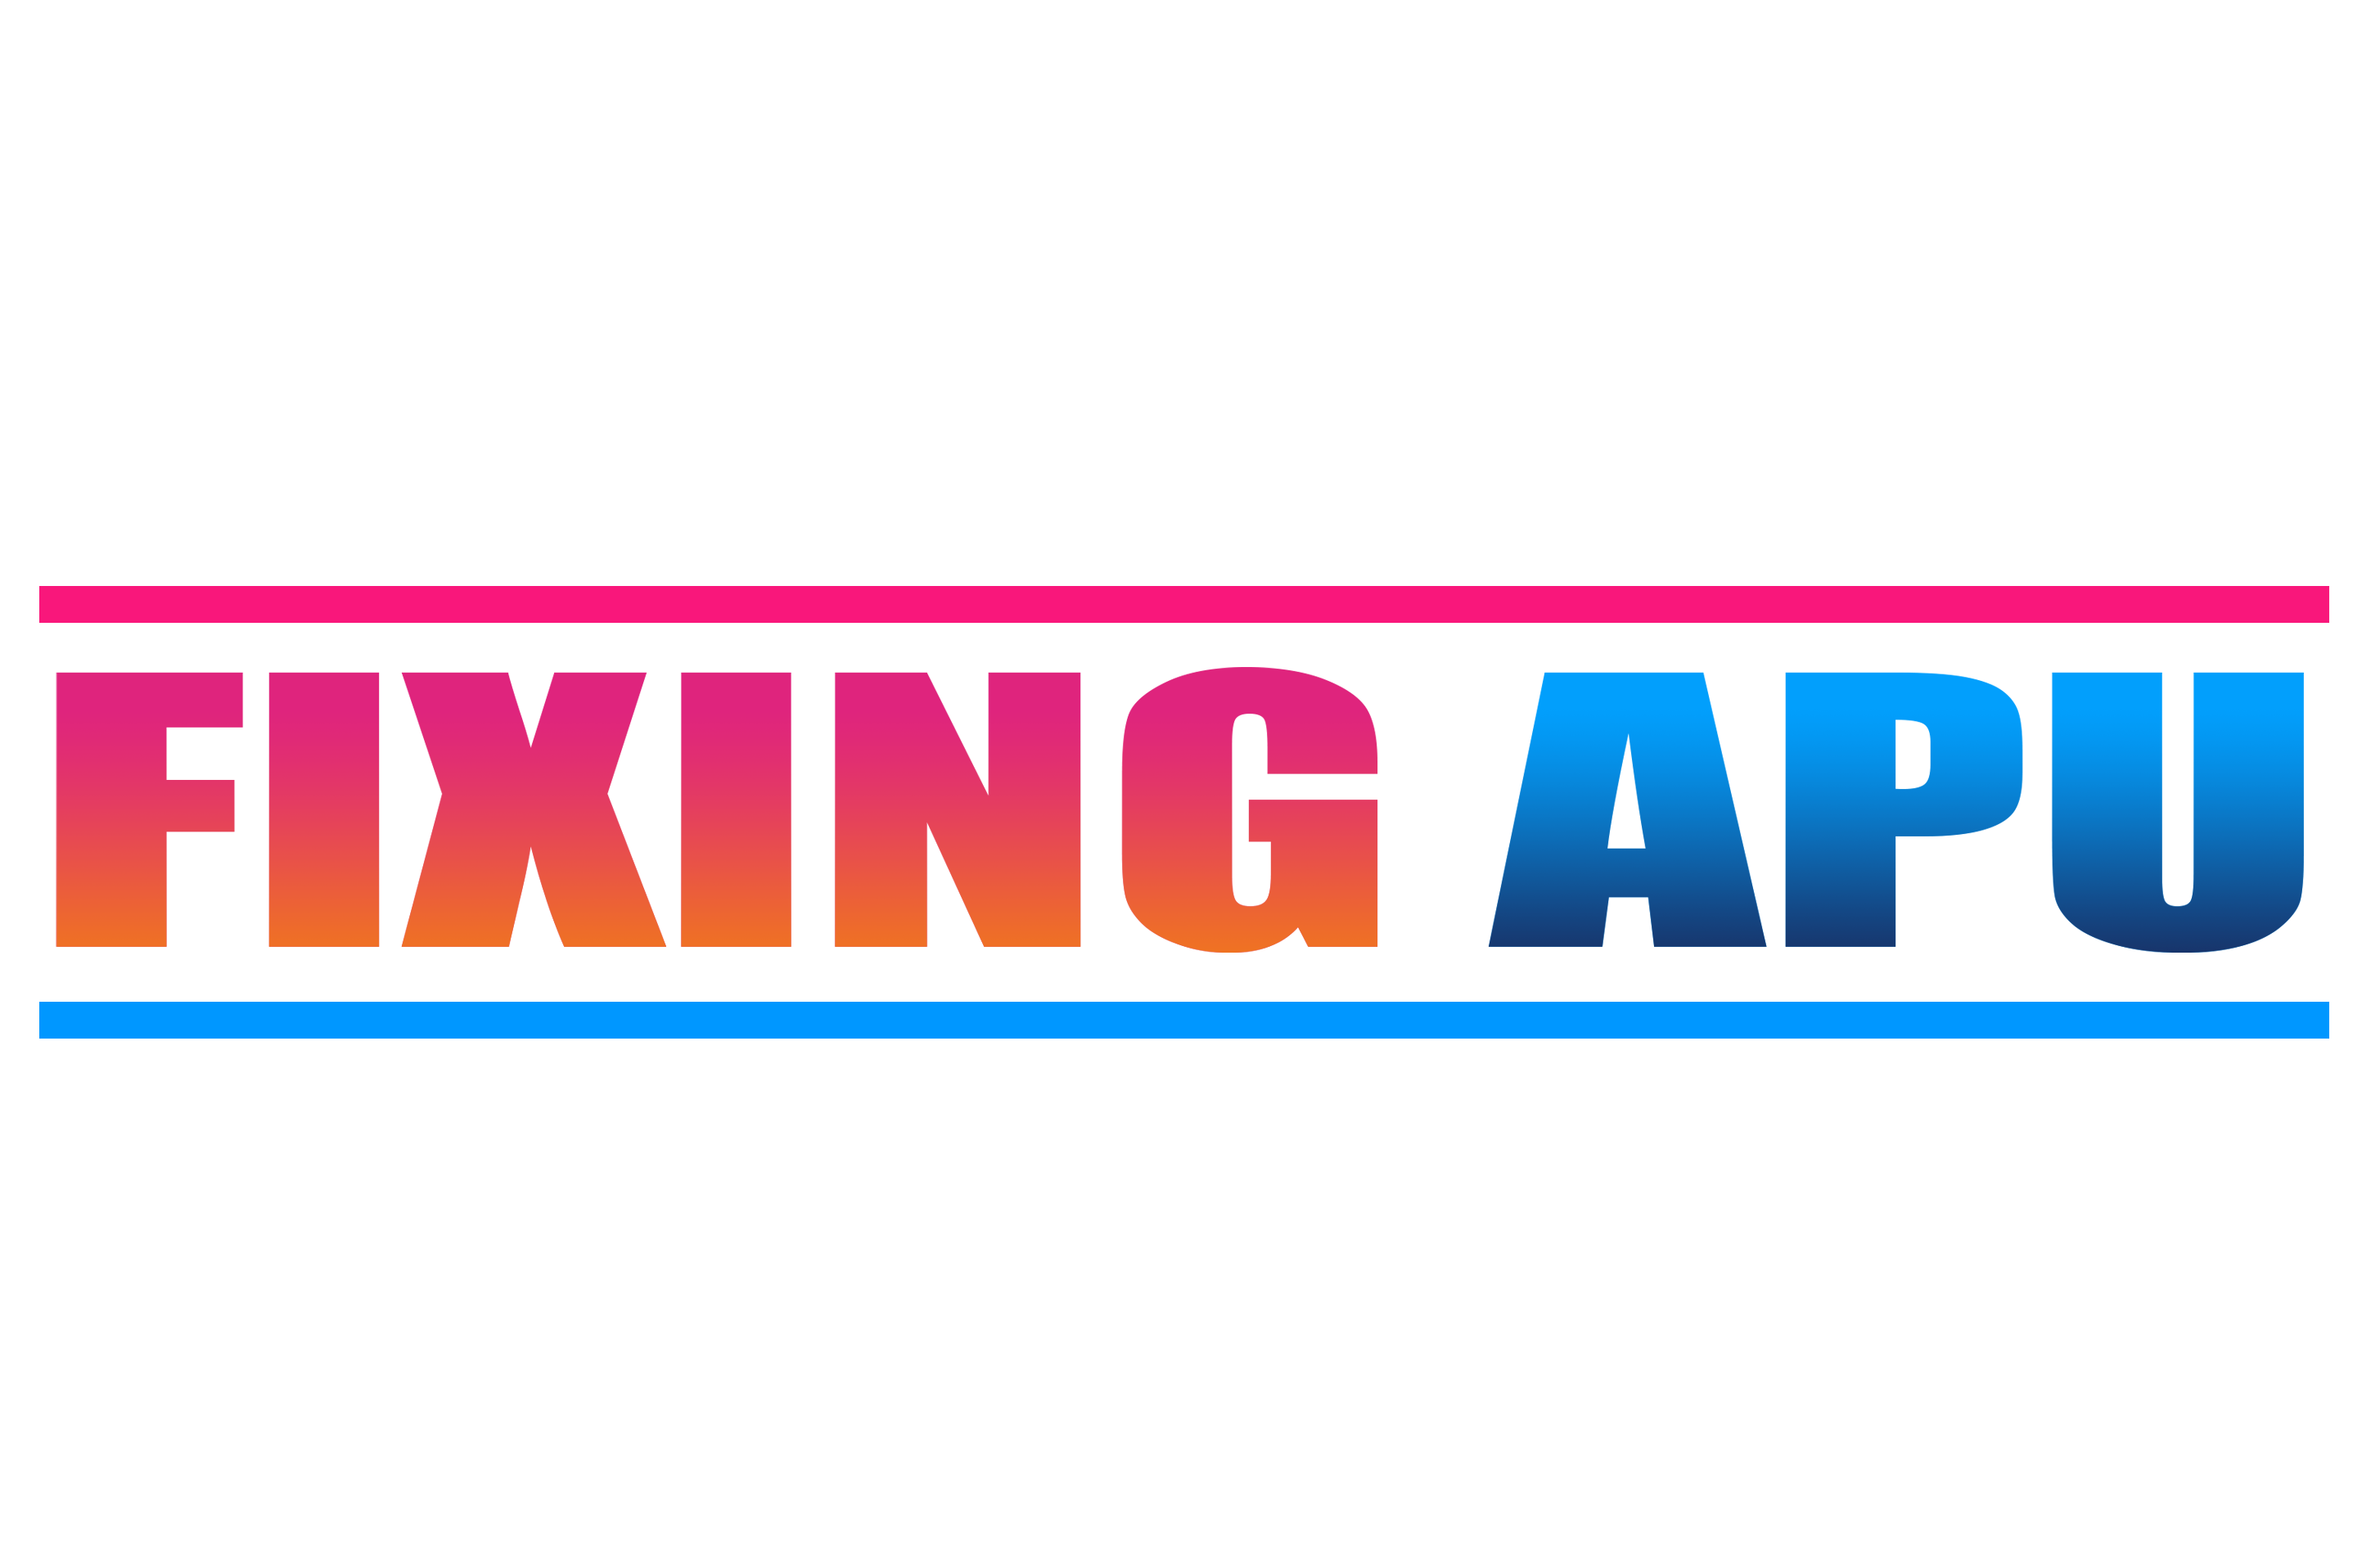 Fixing-Apu-logo